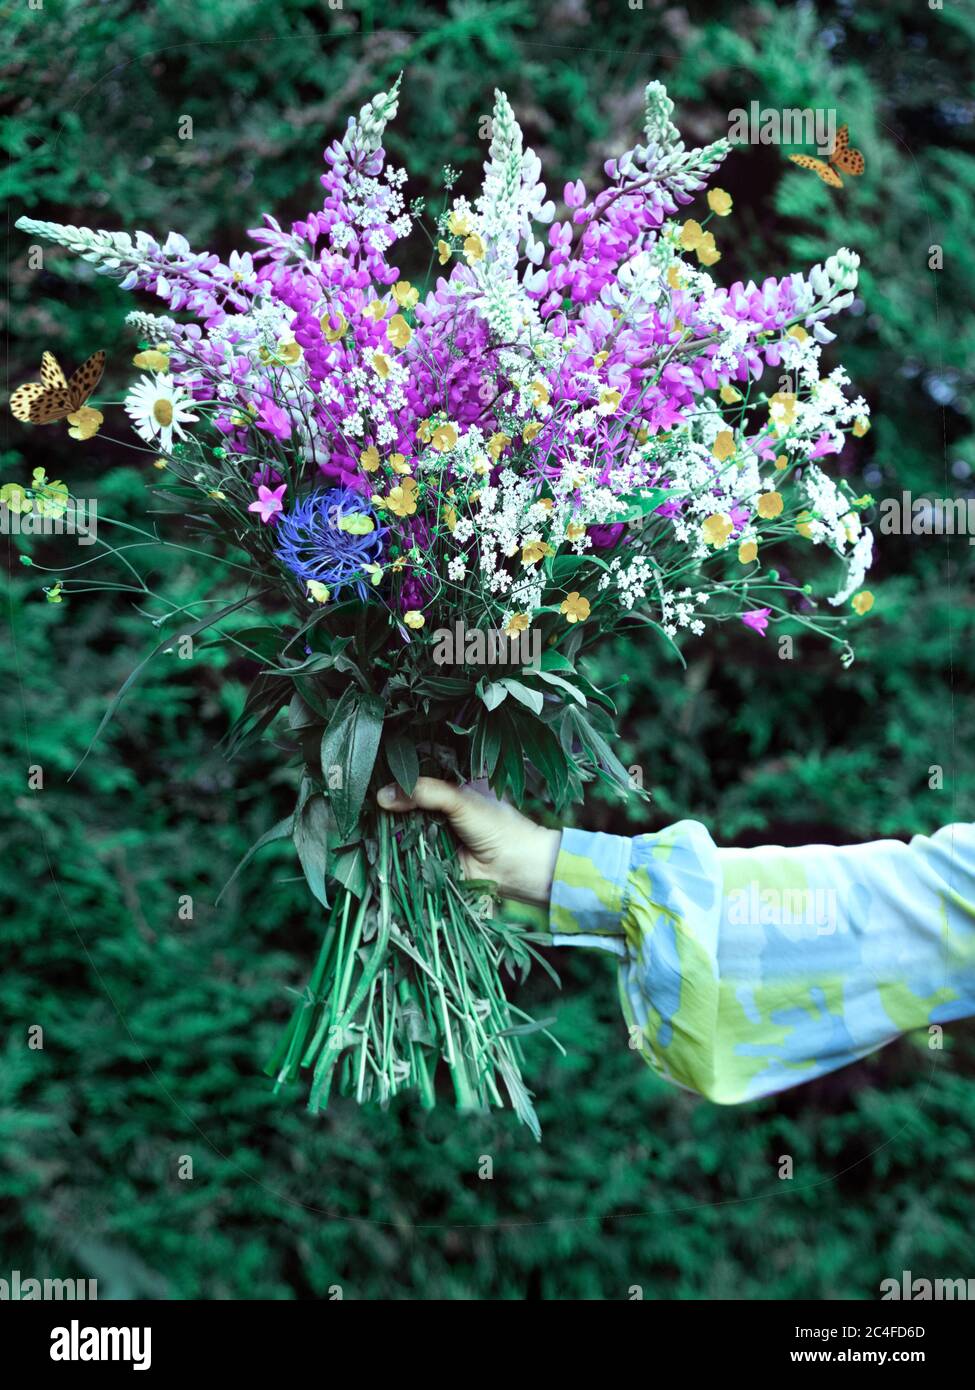 Beau grand bouquet de fleurs sauvages dans une main, sans visage de personnes. Fleurs de lupins en fleurs dans les mains des femmes. Fleurs en cadeau. Banque D'Images